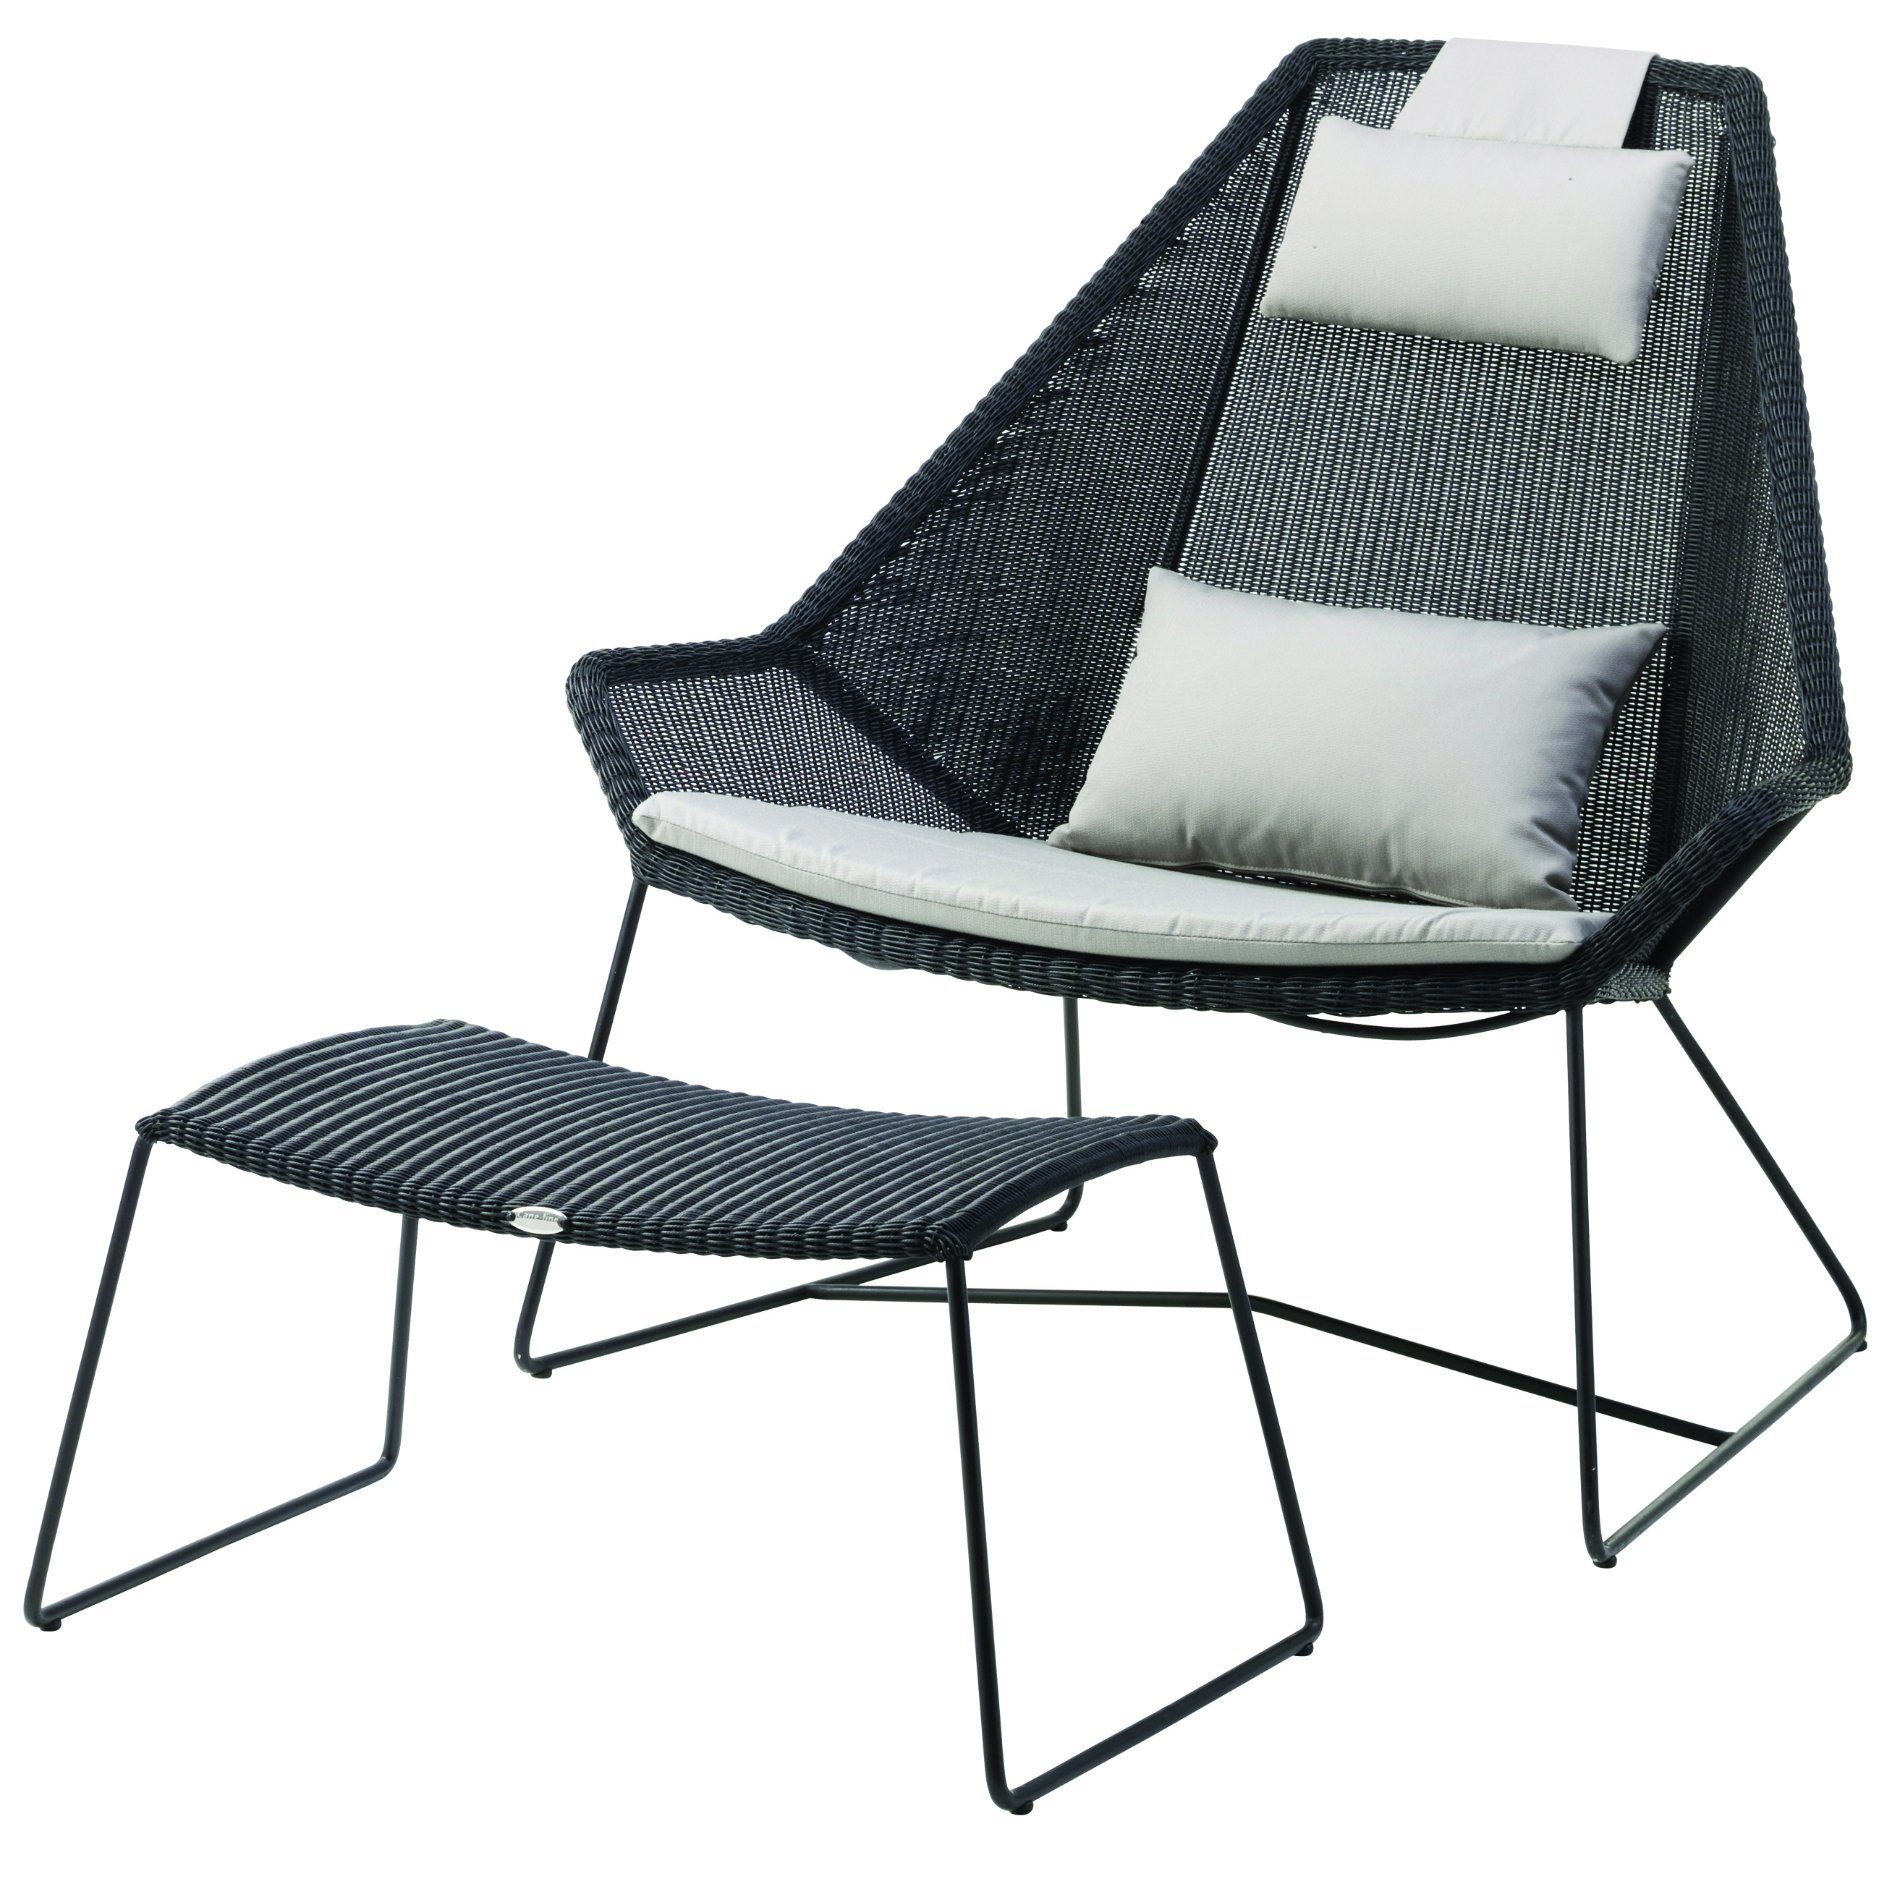 Gartenhocker und Loungesessel "Breeze" von Cane-line, Gestell Stahl schwarz, Sitzfläche Polyrattan schwarz